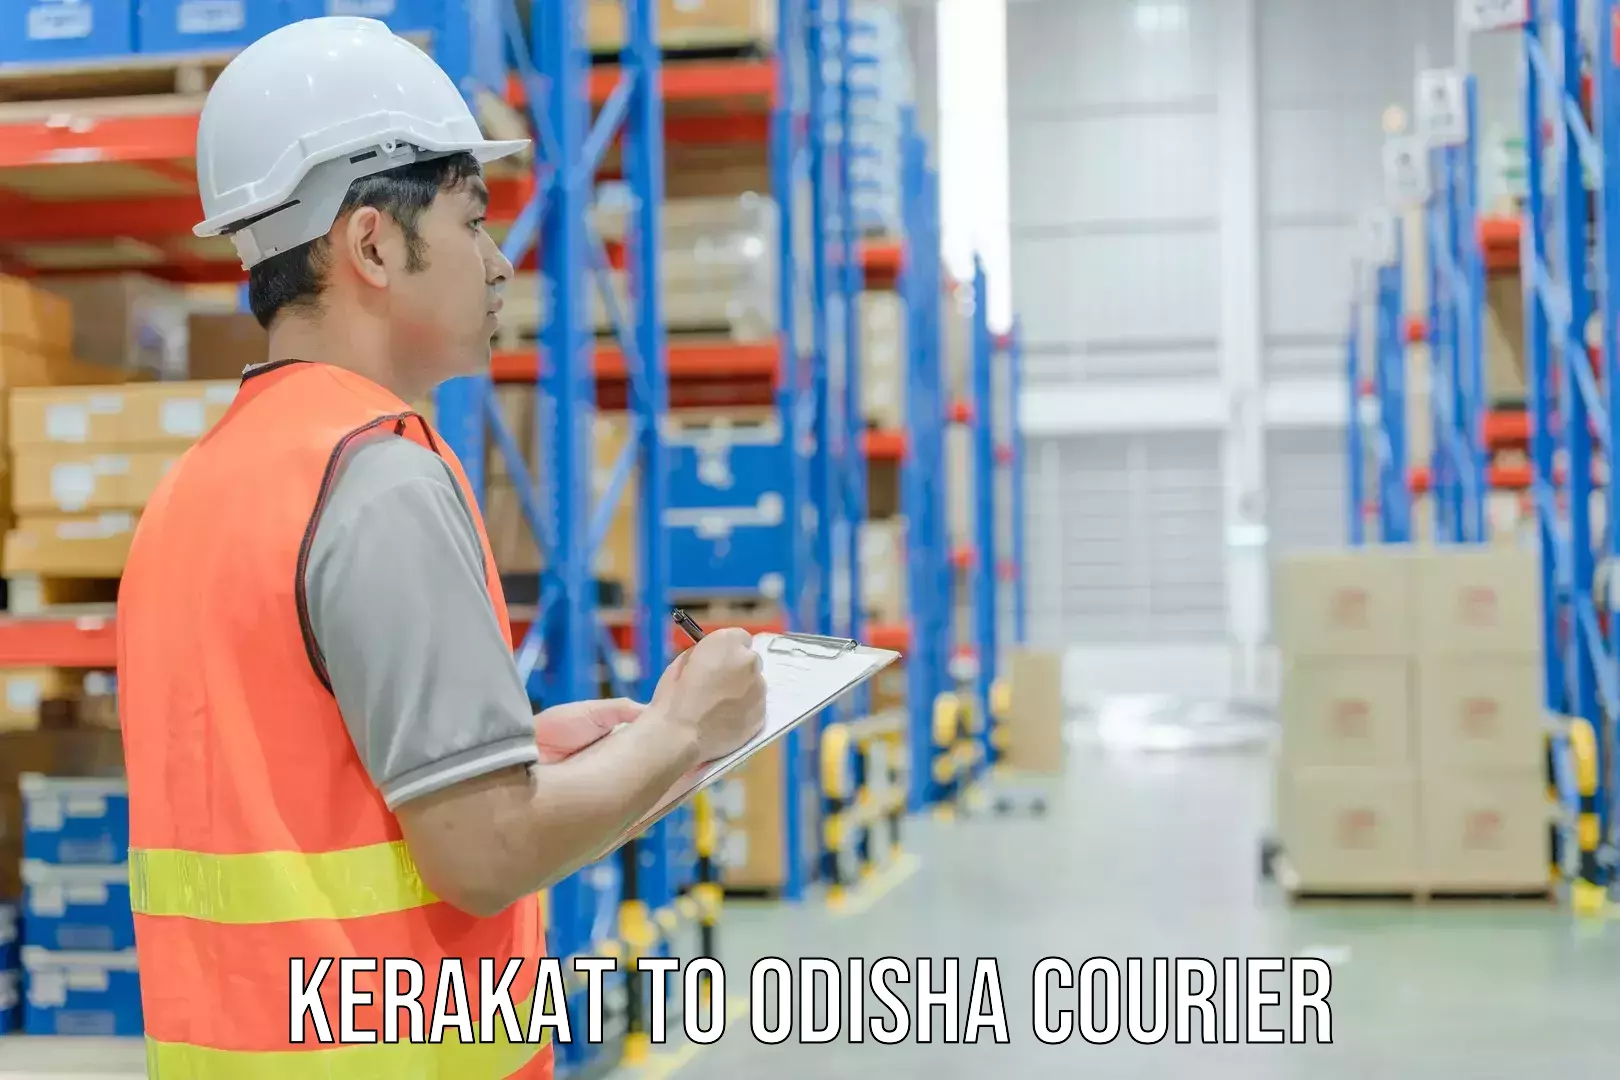 Local courier options Kerakat to Pappadahandi